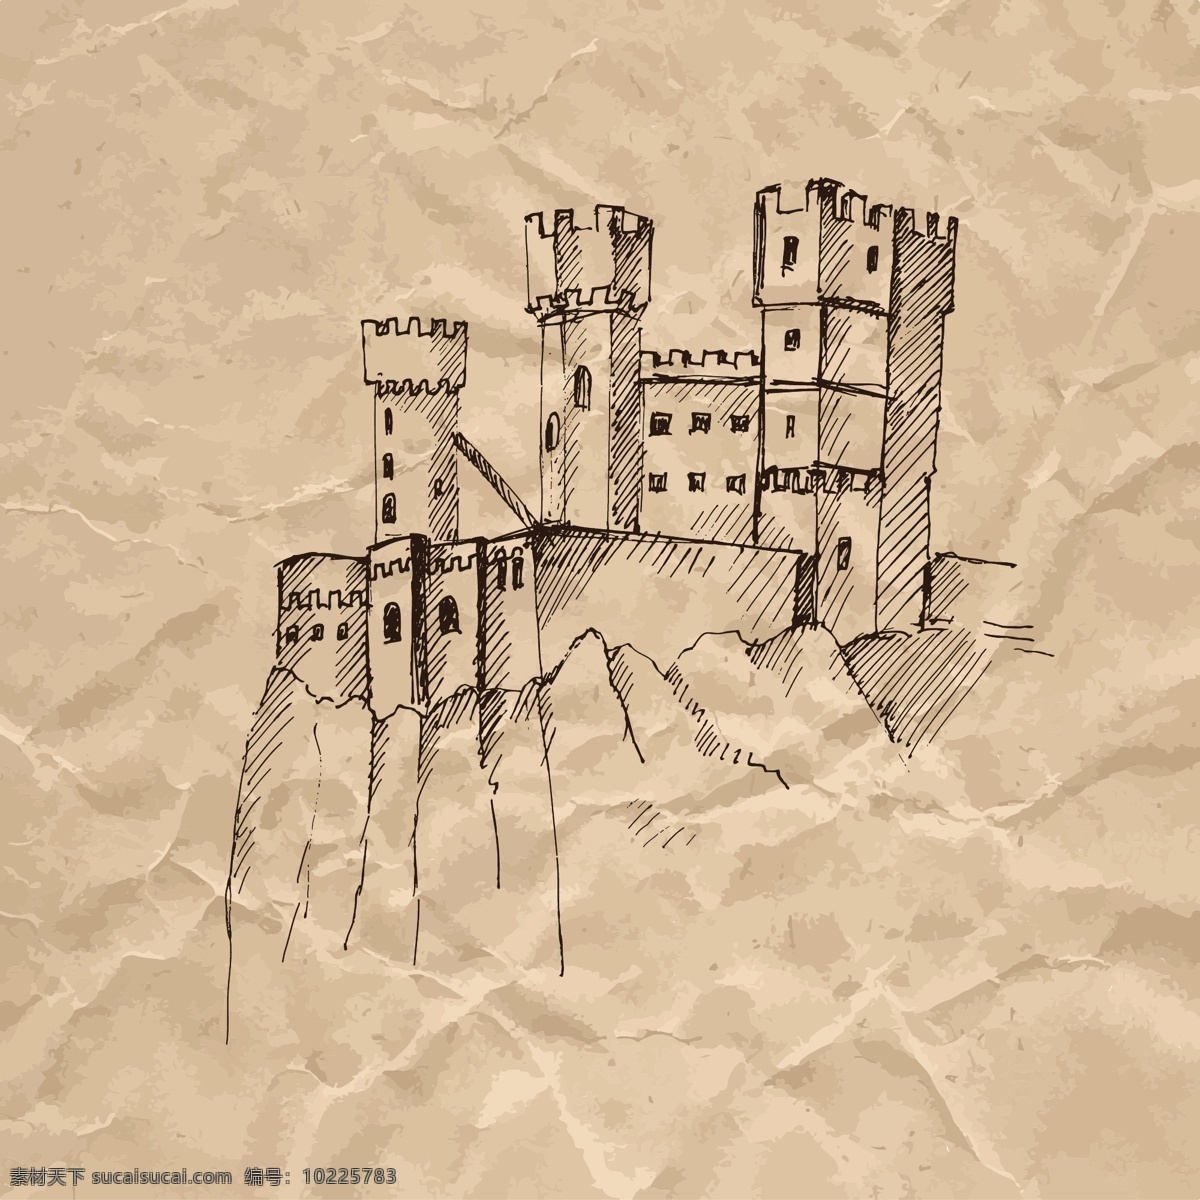 城堡 悬崖 褶皱 纸张 手绘 速写 欧洲 建筑 矢量 著名建筑 欧式 素描 广告 背景